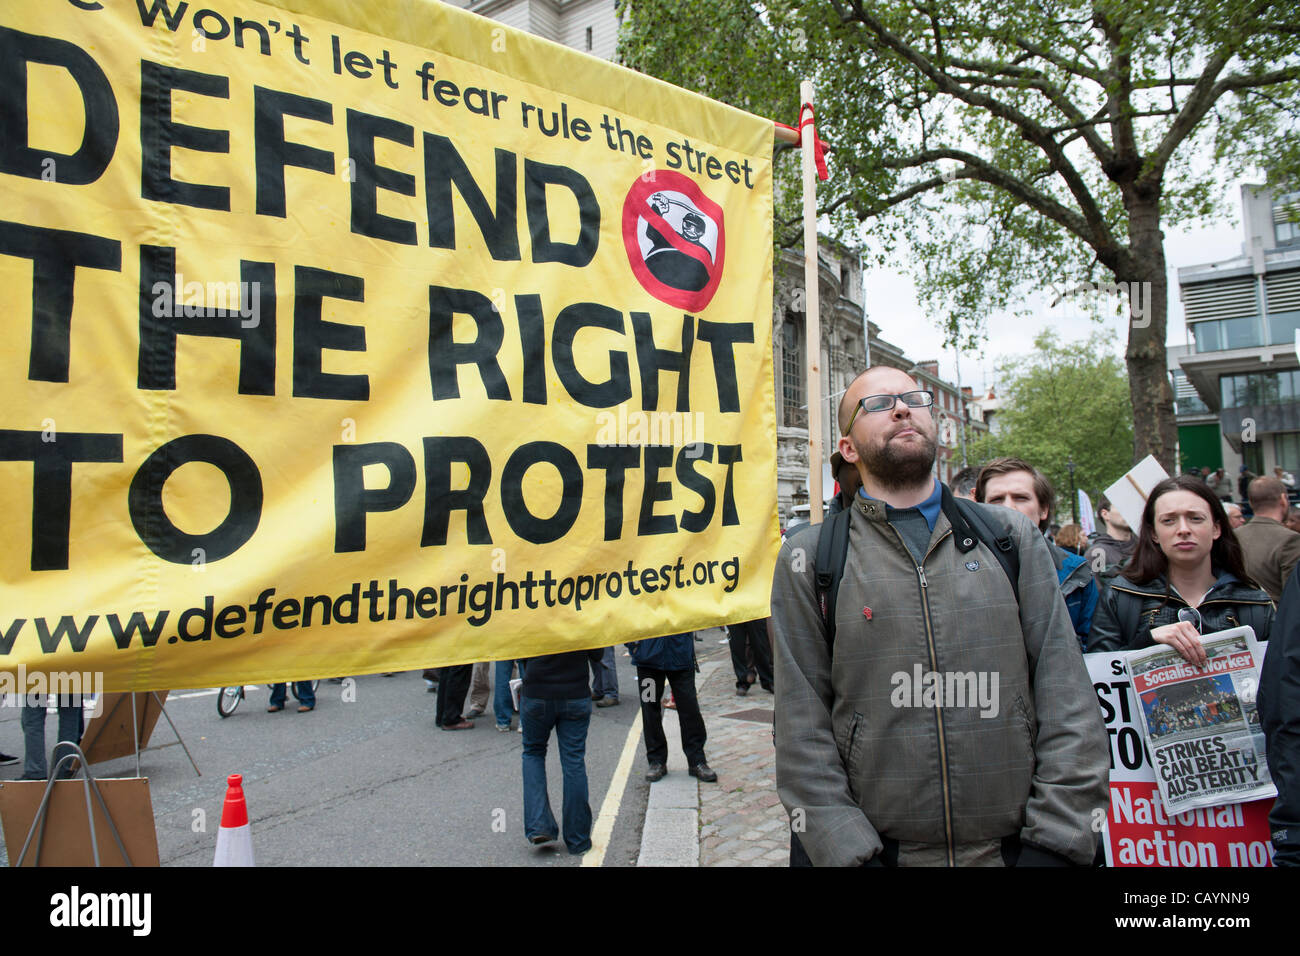 Bannière proclamant le droit de protestation qui aura lieu au centre de Londres avec des activistes vendre Socialist Worker Journal. Banque D'Images